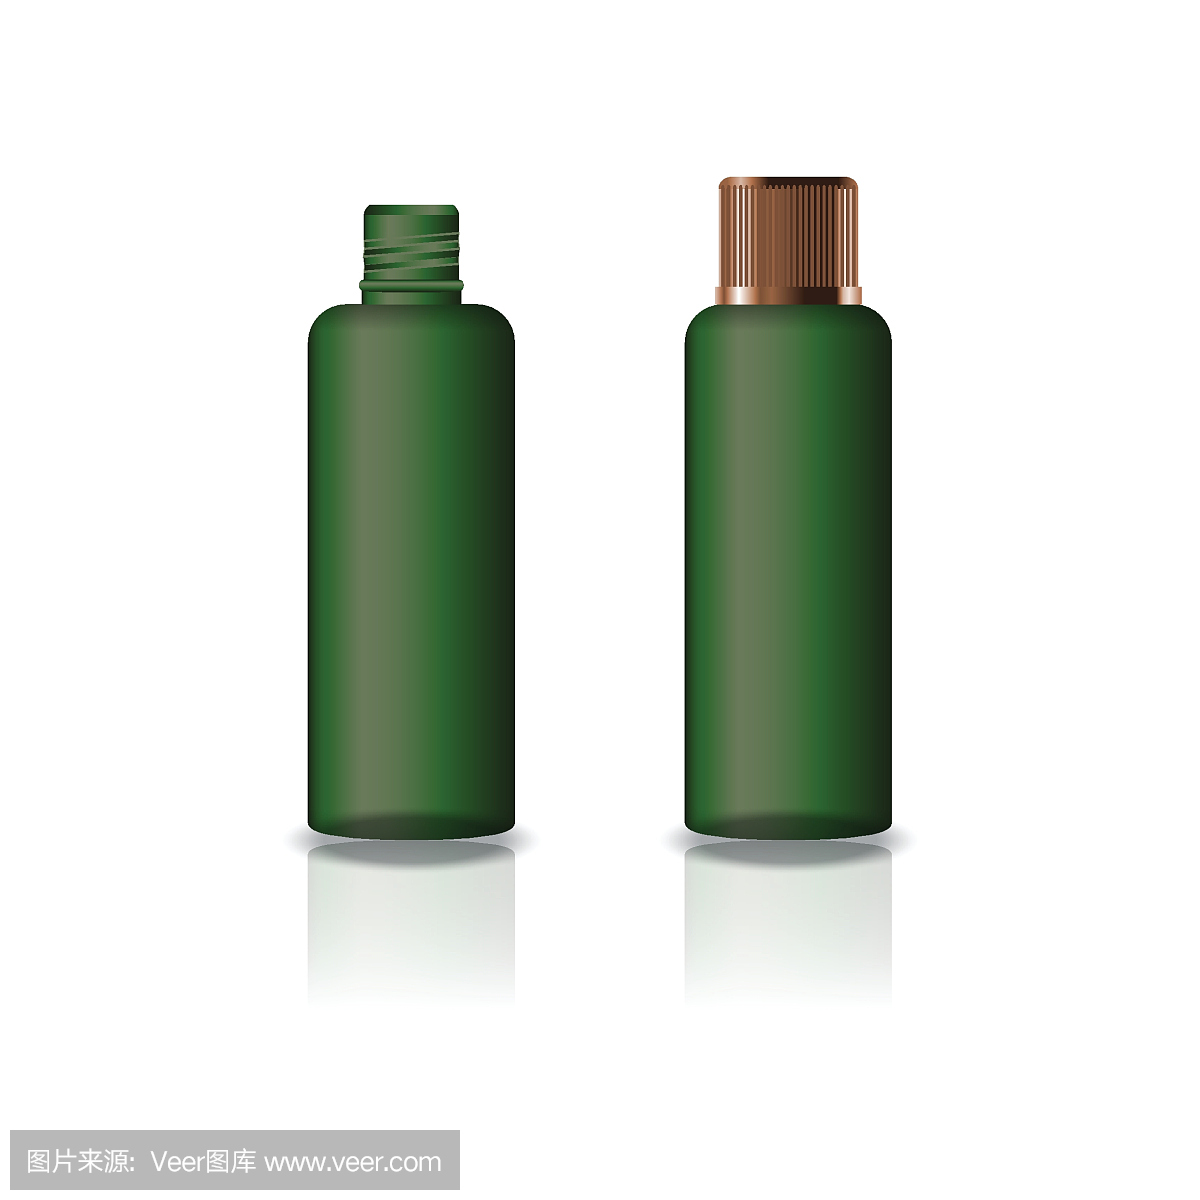 空白绿色化妆品圆瓶与凹槽铜盖美容或健康产品。孤立在白色背景与反射阴影。可用于包装设计。矢量插图。